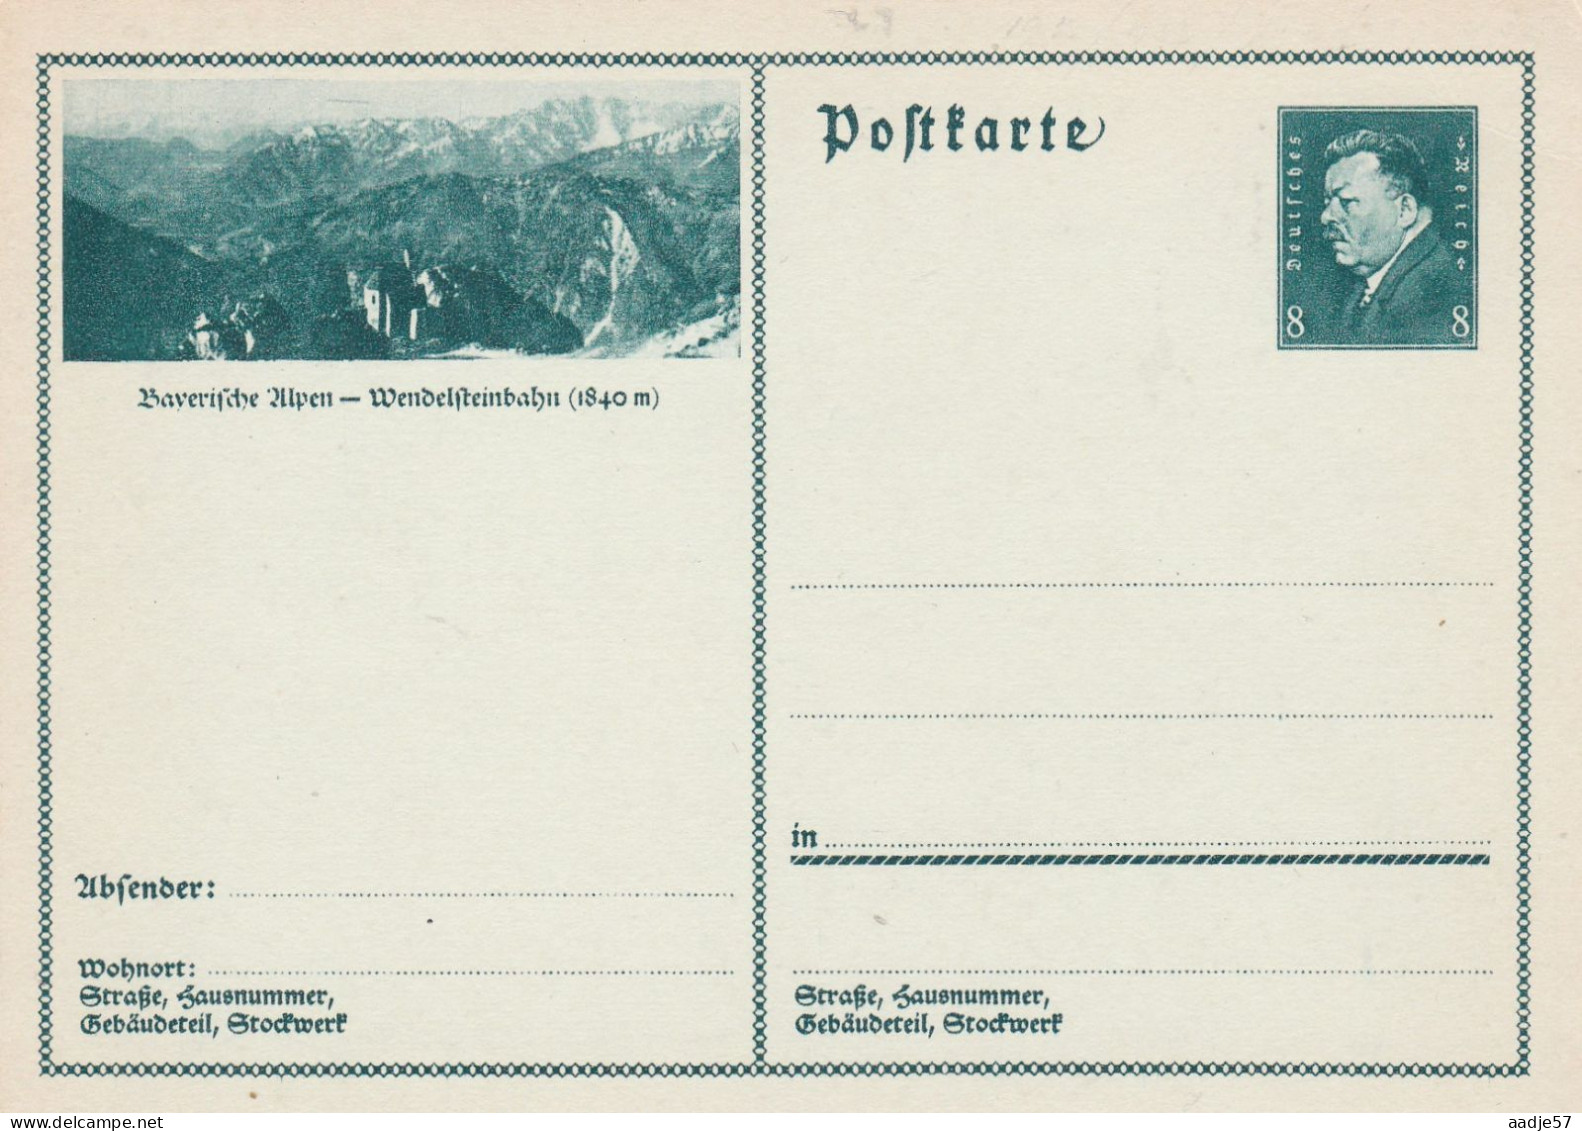 Besucht Baverische Alpen Wendelsteinbahn - Bildpostkarte 1931 -  Mint - Cartoline